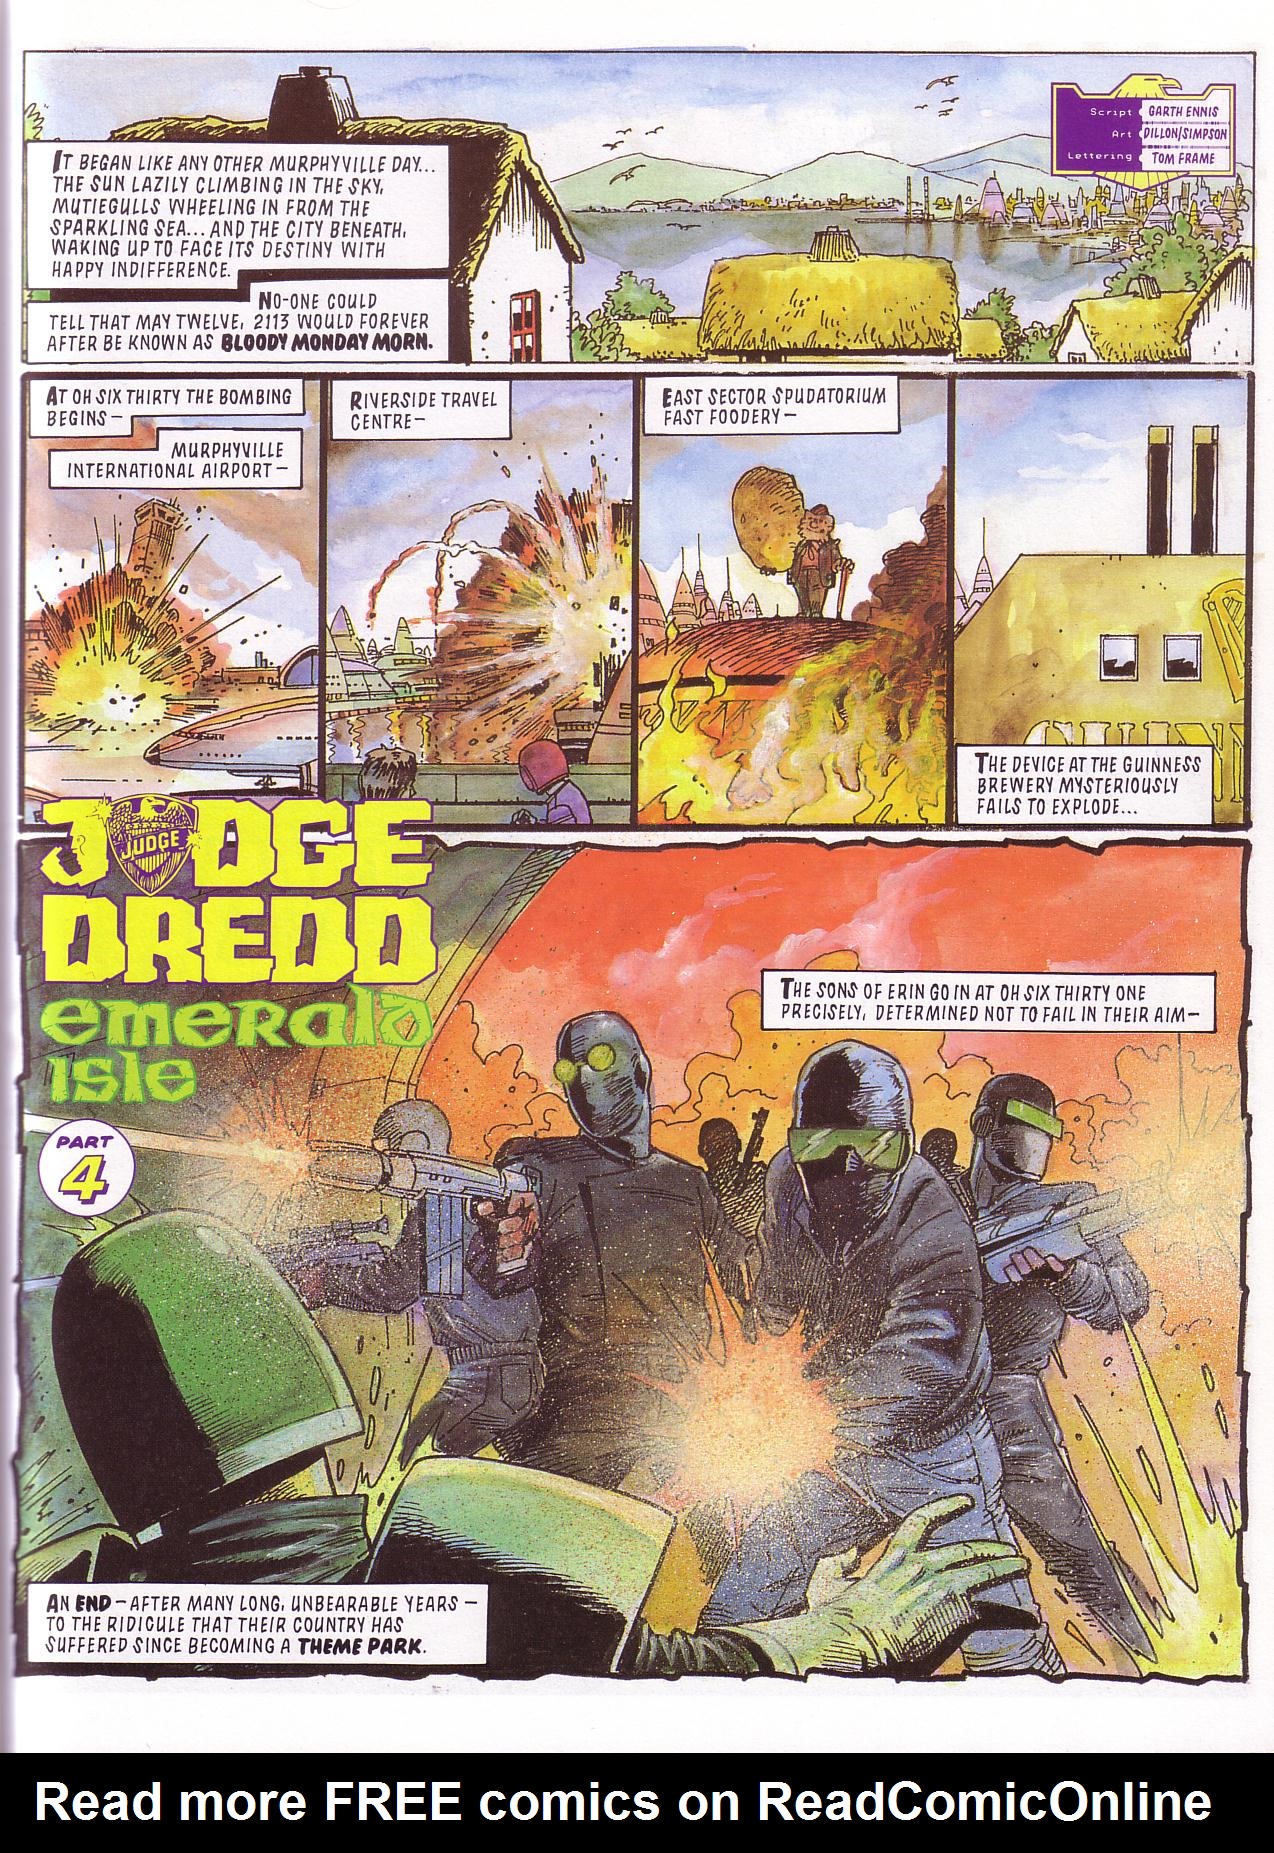 Read online Judge Dredd: Emerald Isle comic -  Issue # TPB - 25